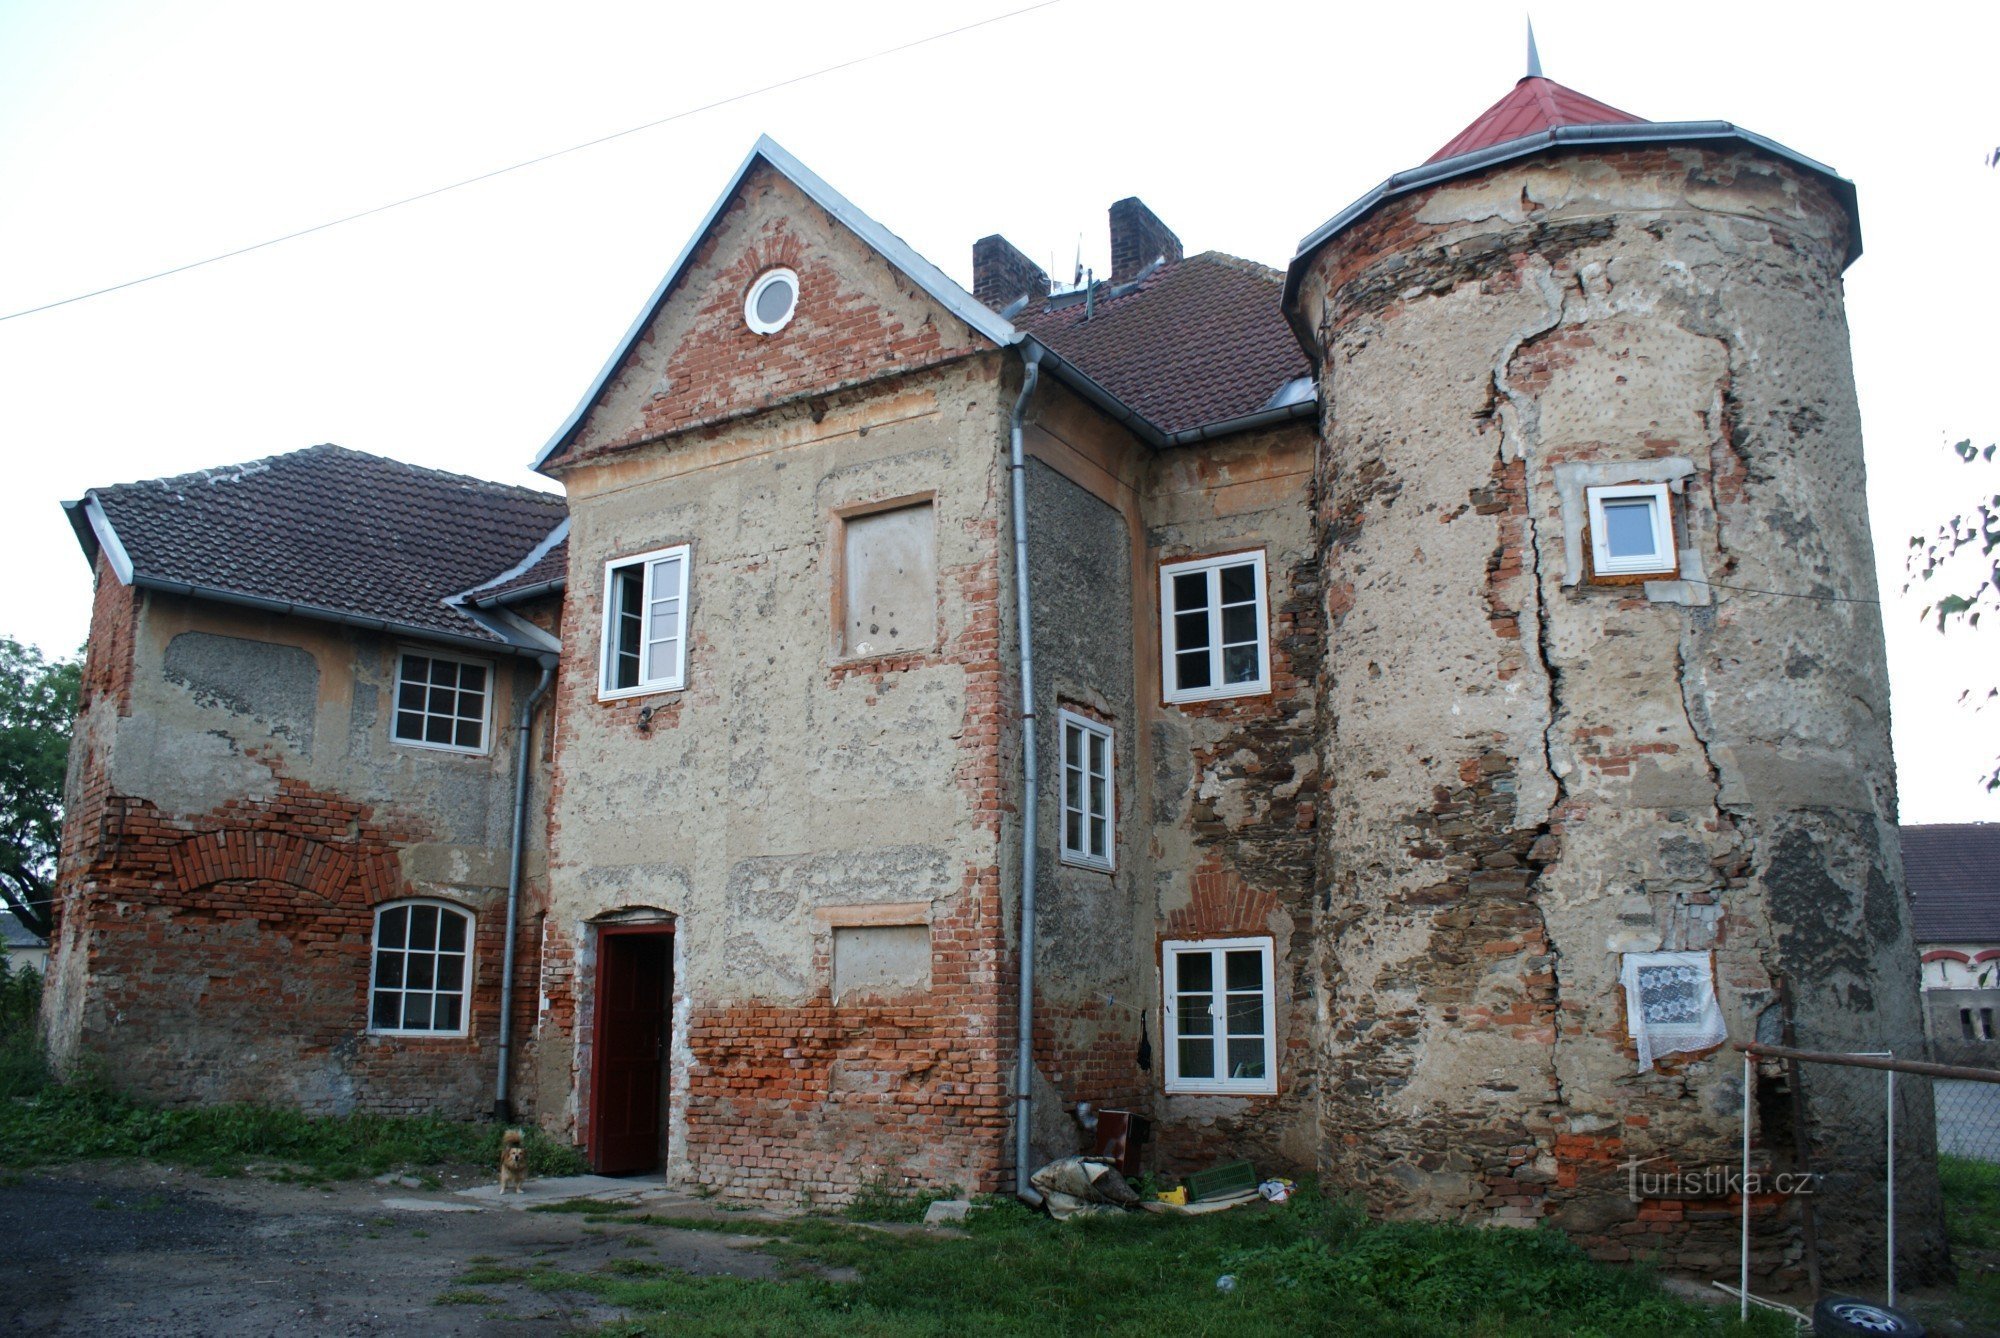 Elever på Čáslav - fæstning